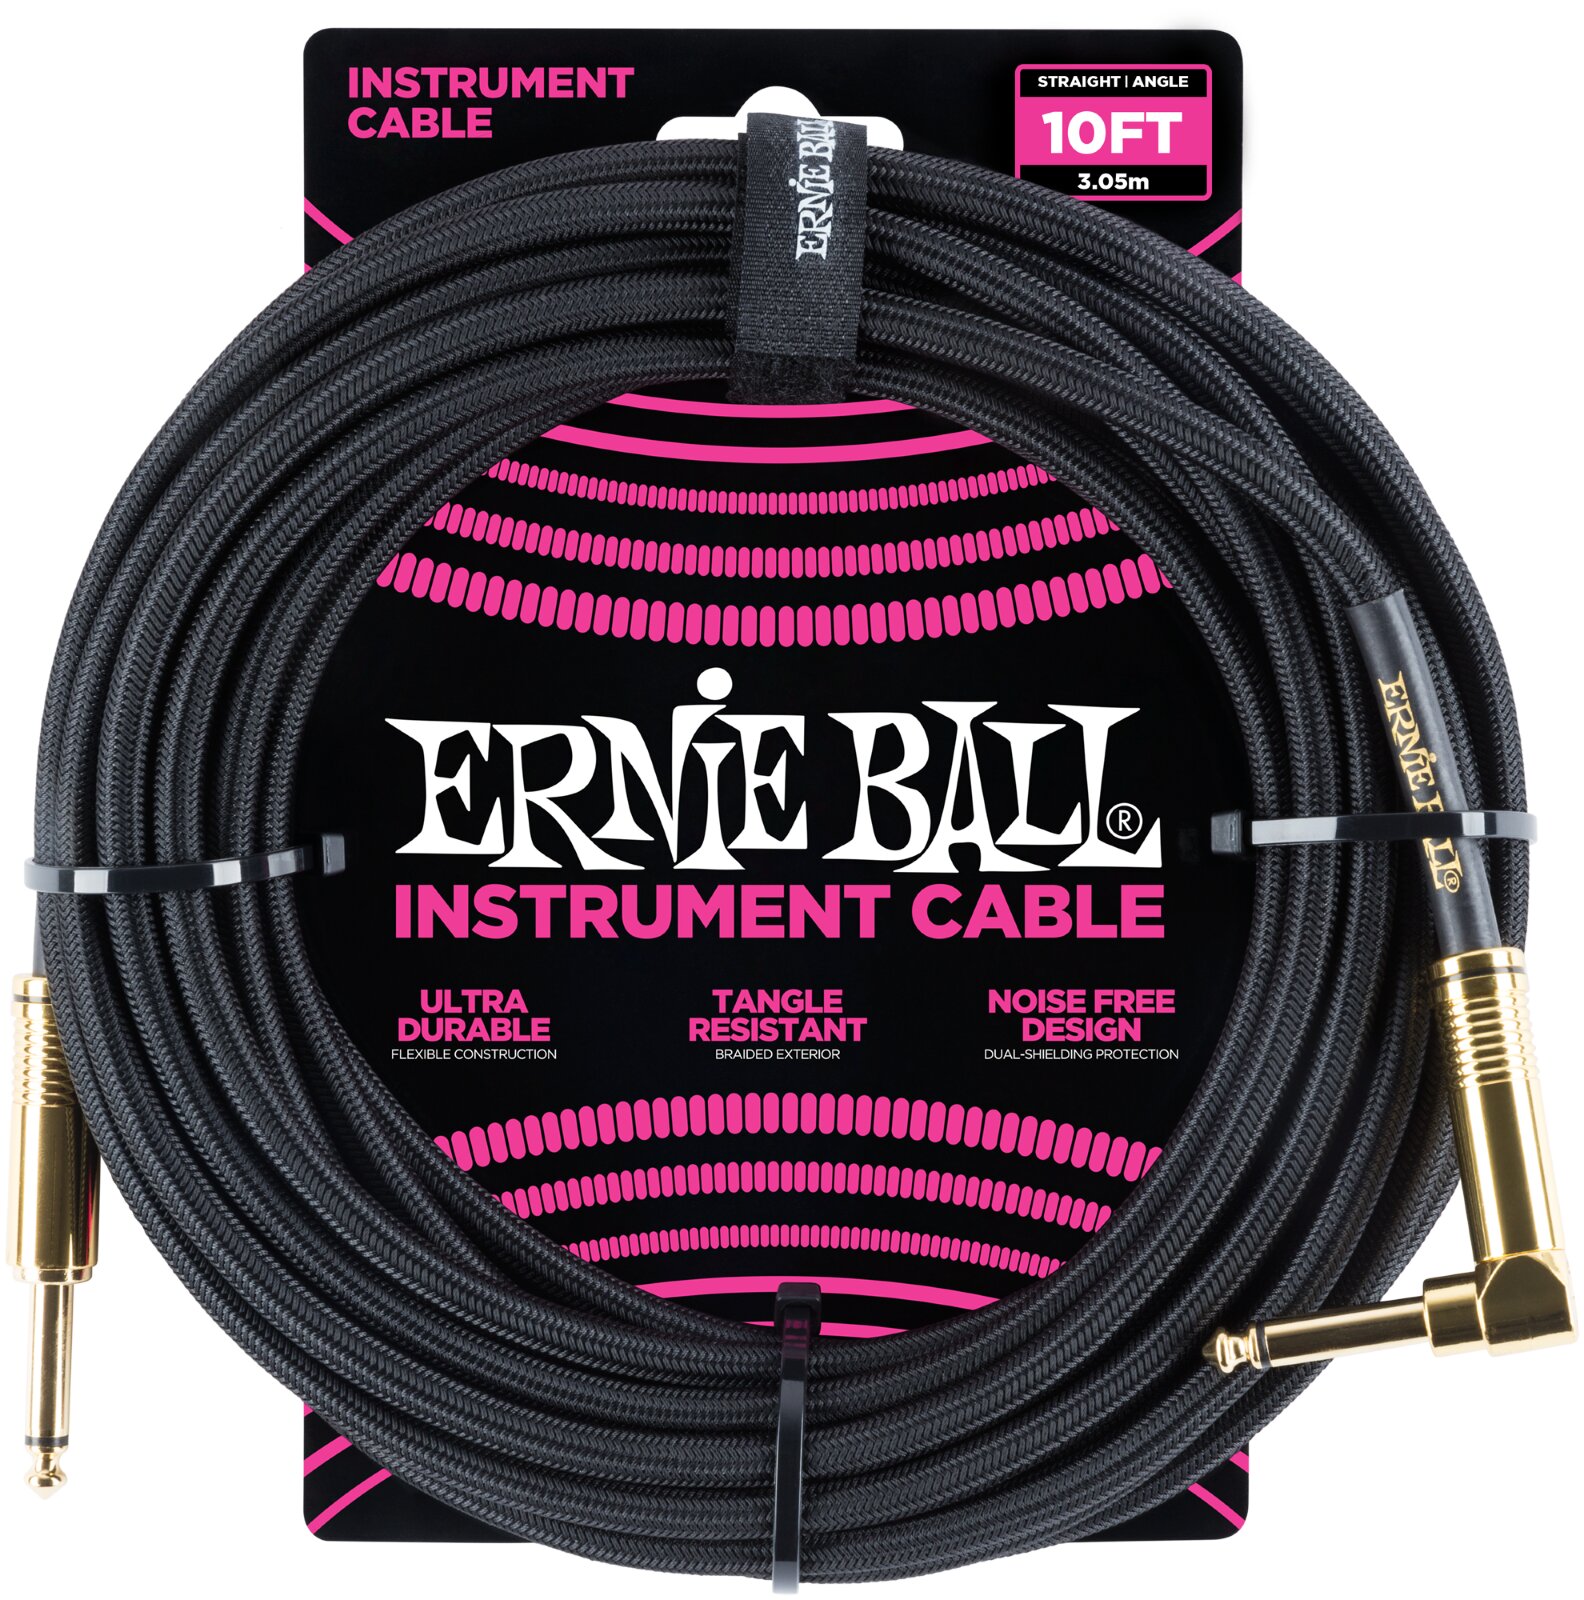 Ernie Ball Câble pour instrument, tissu noir, droit/coudé, 3m (10ft) : photo 1